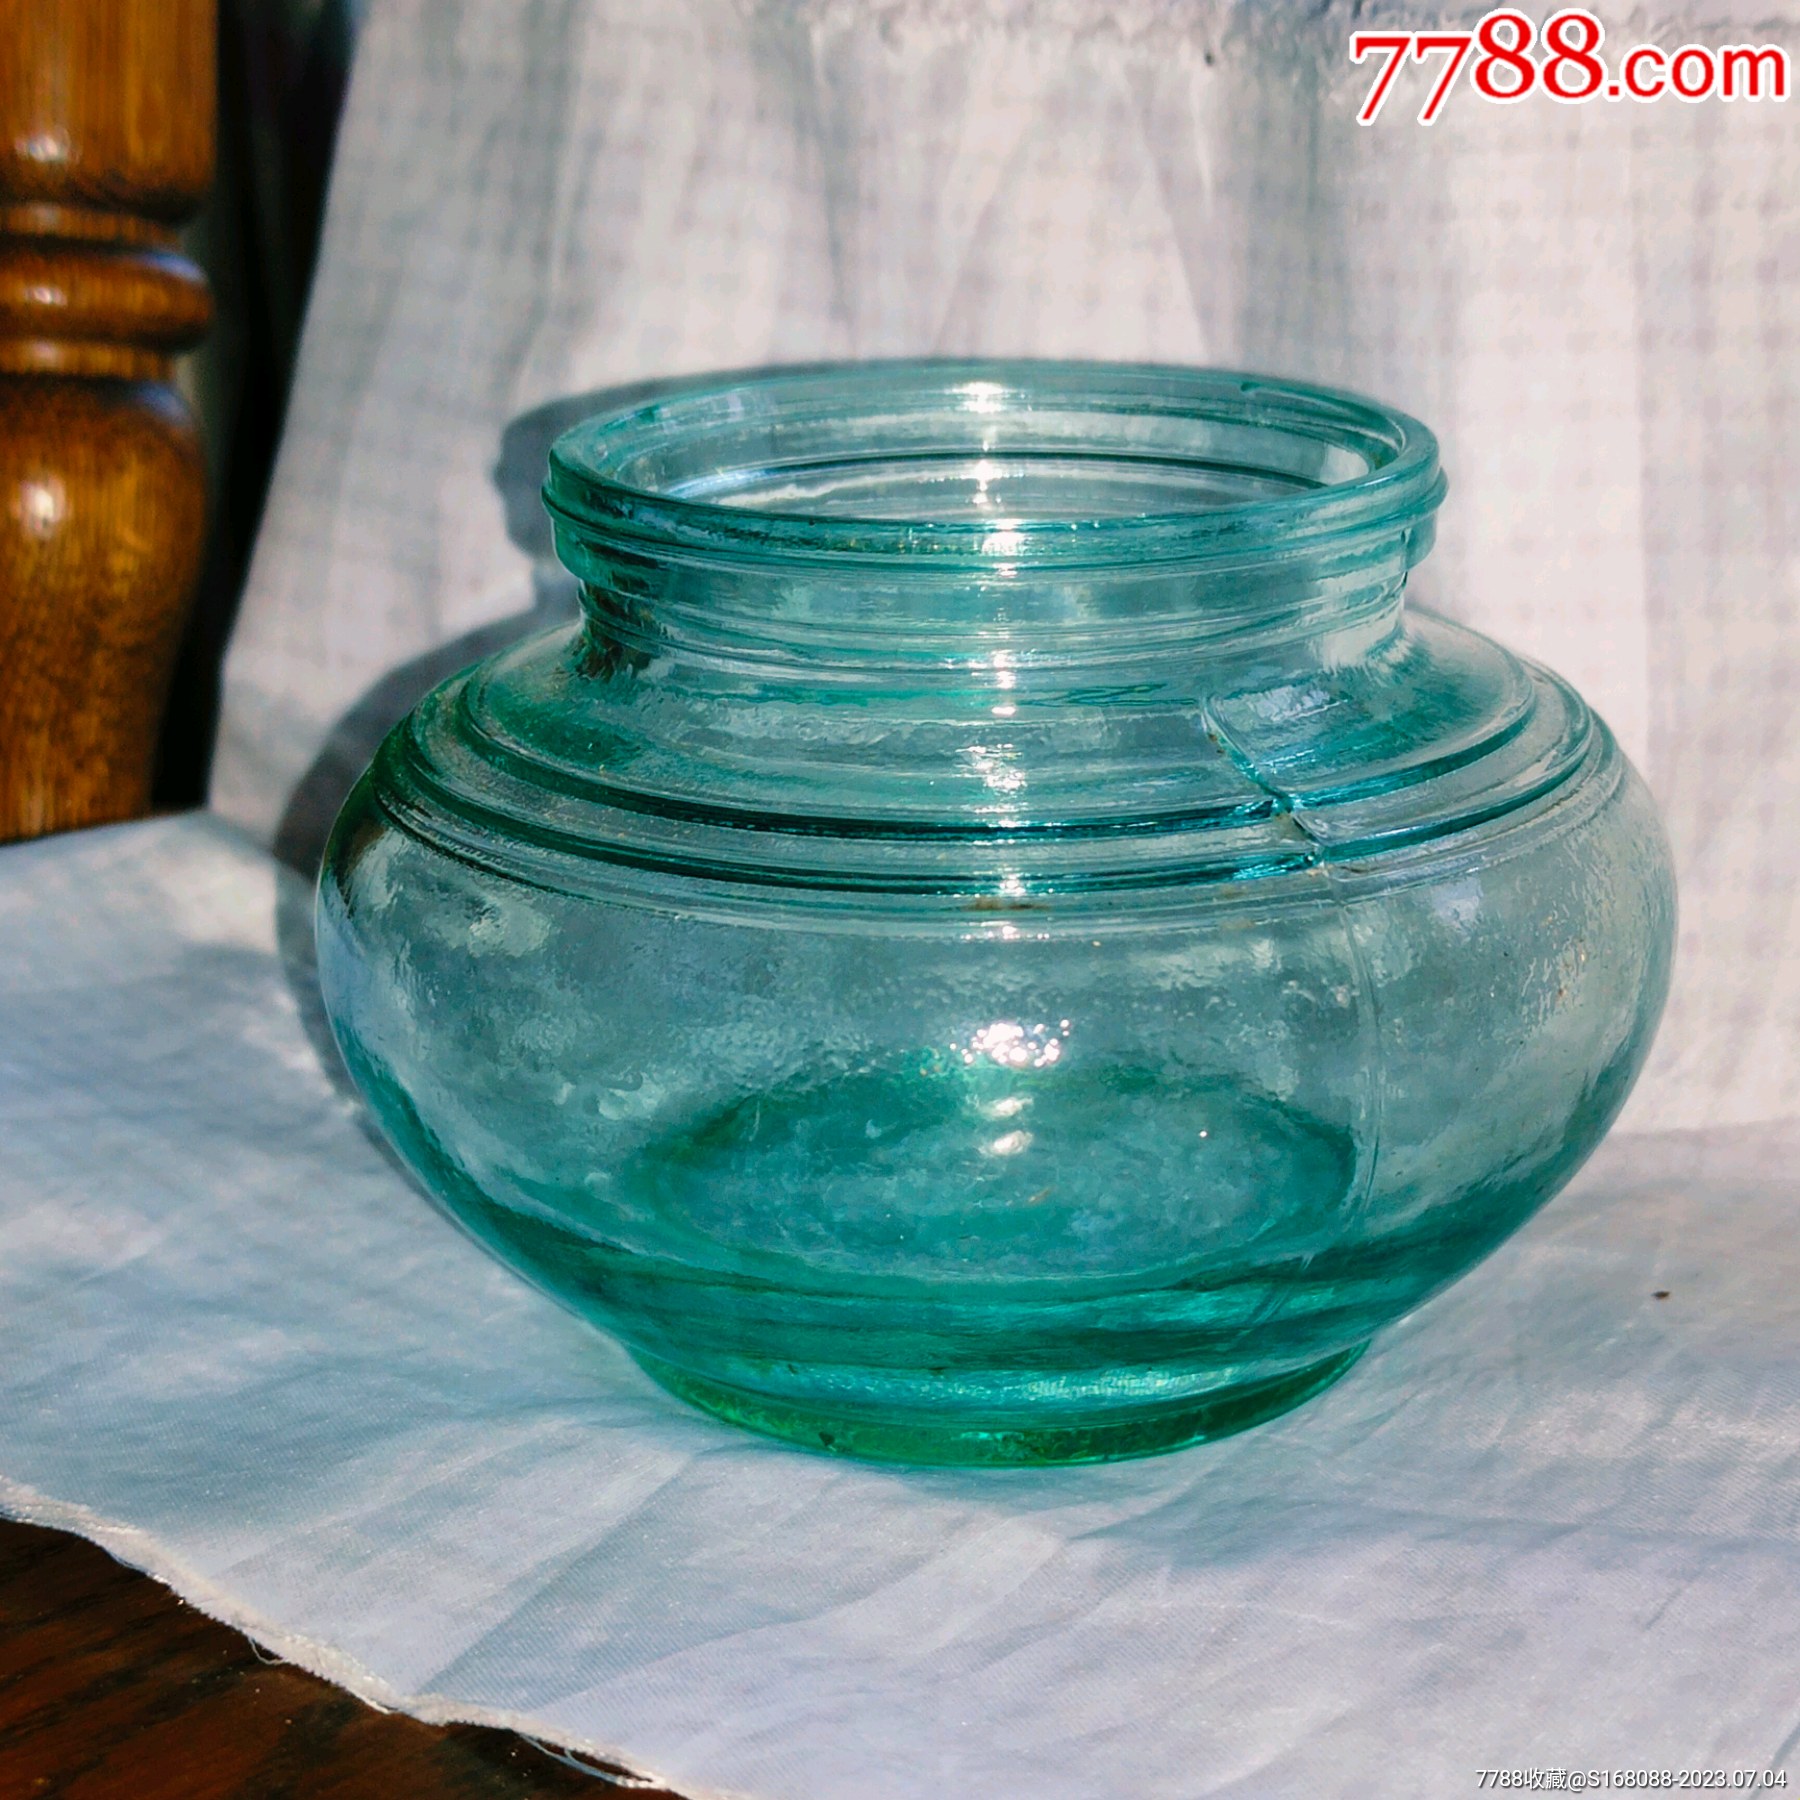 民国…玻璃罐-价格:19元-au33426824-玻璃器皿 -加价-7788收藏__收藏热线